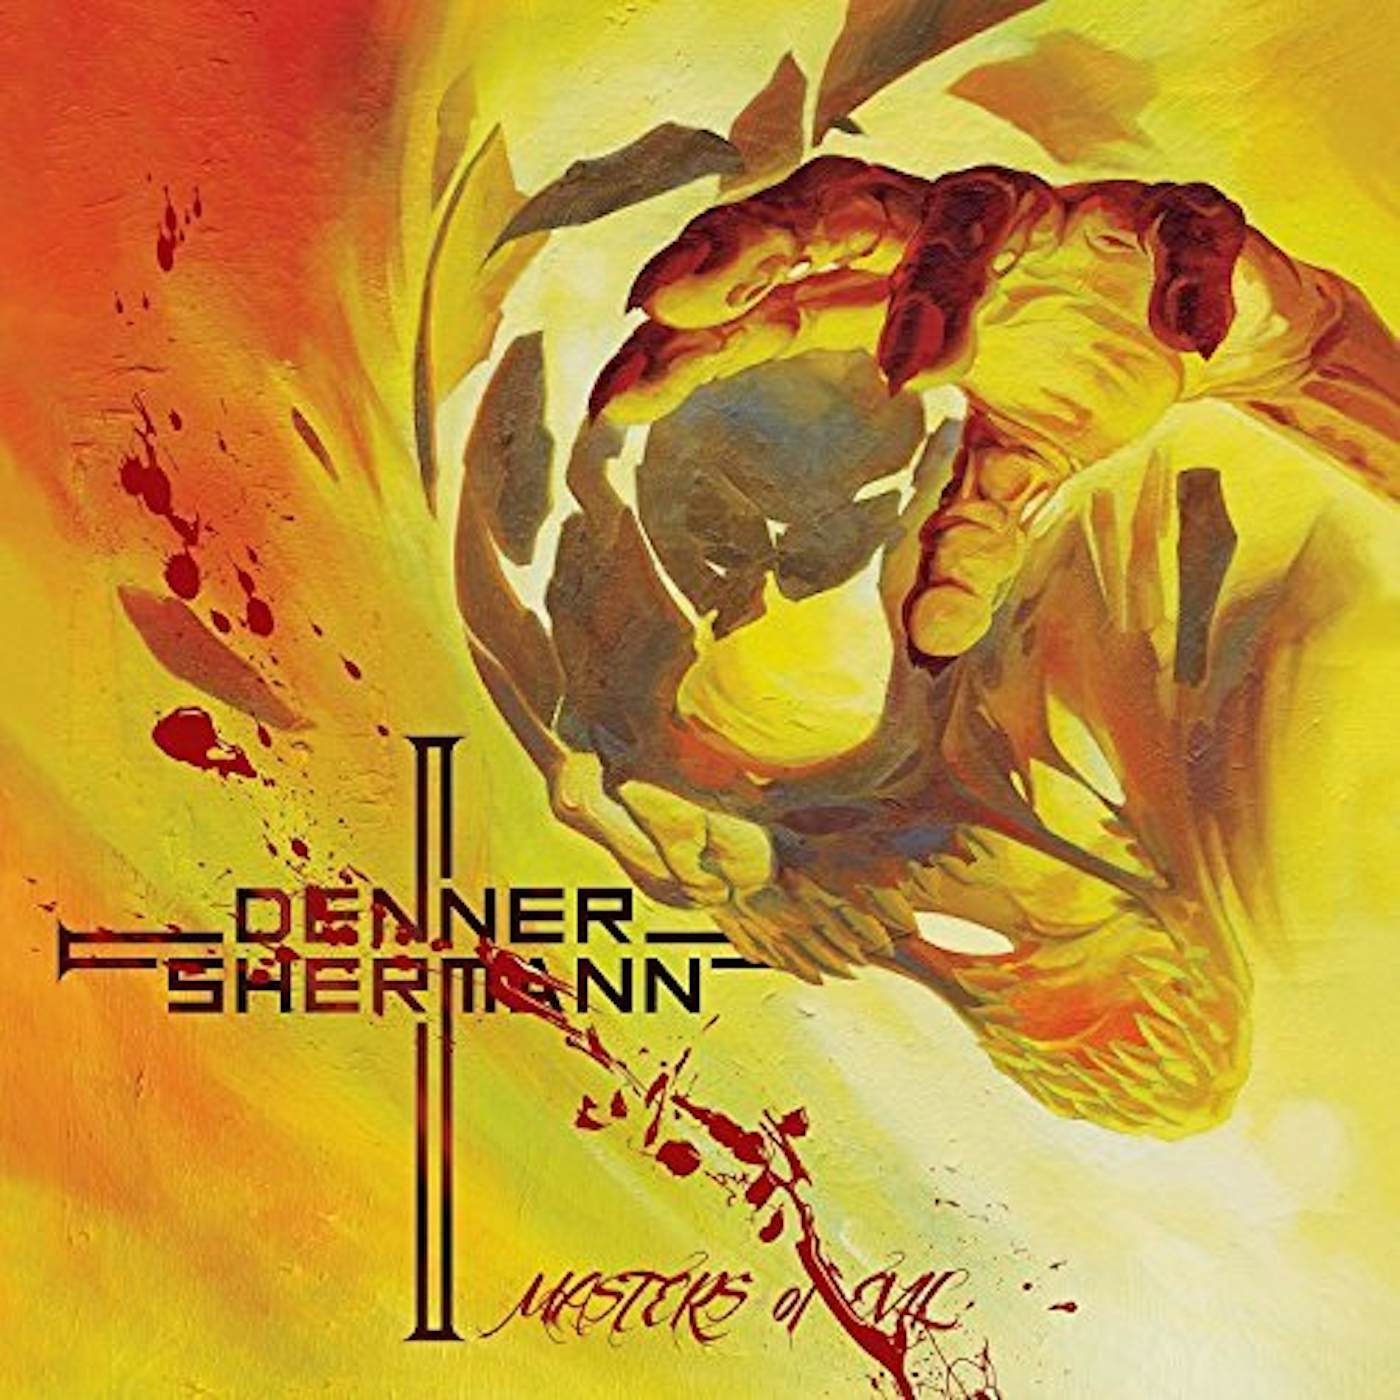 Denner / Shermann Masters of Evil Vinyl Record